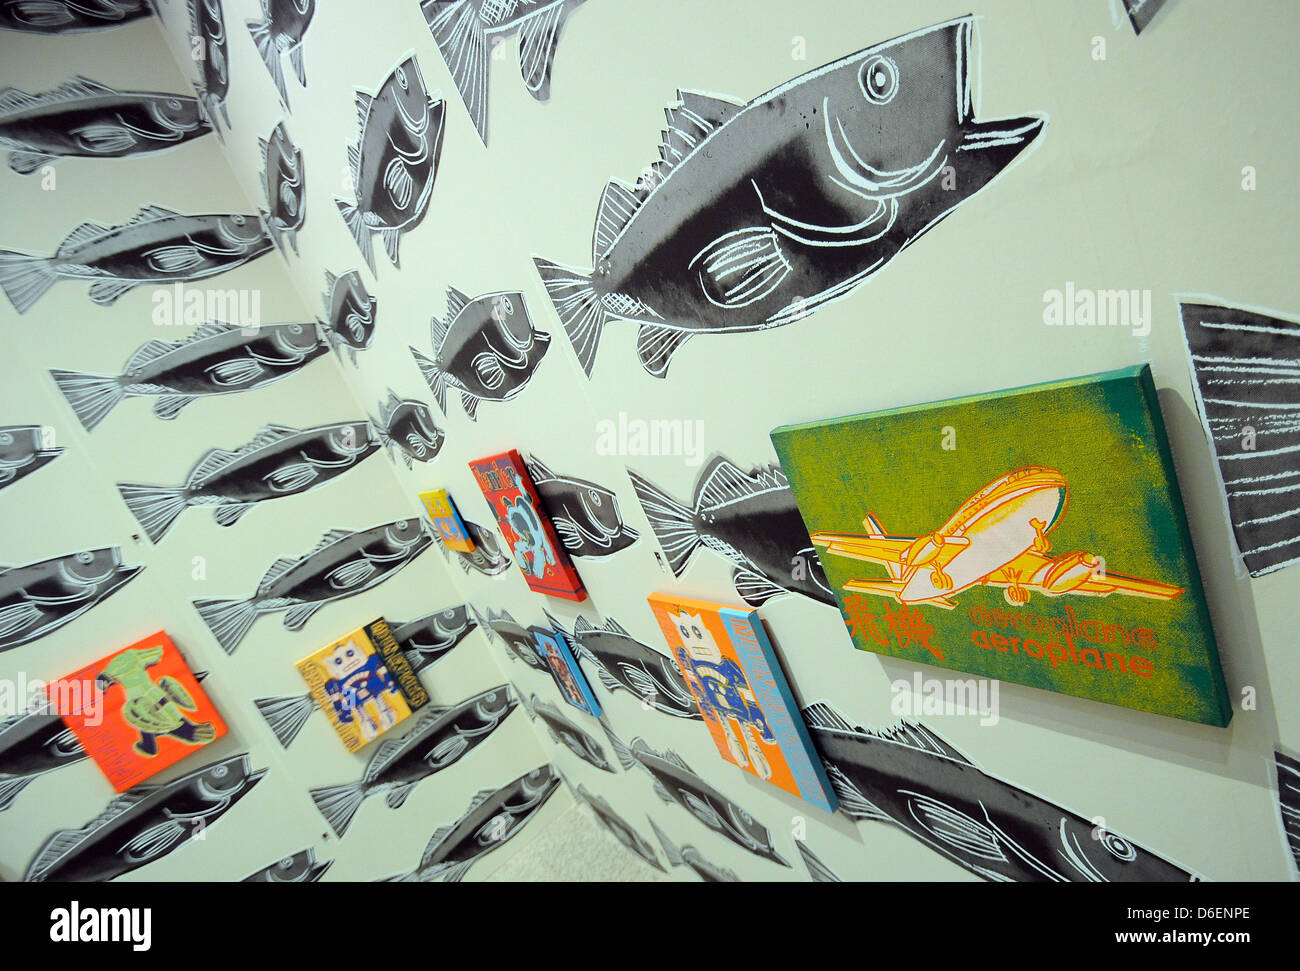 "La Infancia/Pinturas de juguete" (1983) por Andy Warhol se presentan en el "papel tapiz" Andy Warhol durante la exposición 'Ménage à trois - Warhol, Basquiat, Clemente' en el Salón de Arte y Exposiciones de la República Federal de Alemania en Bonn, Alemania, 07 de febrero de 2012. La exposición estará abierta al público del 10 de febrero al 20 de mayo de 2012. Foto: HENNING KAISER Foto de stock